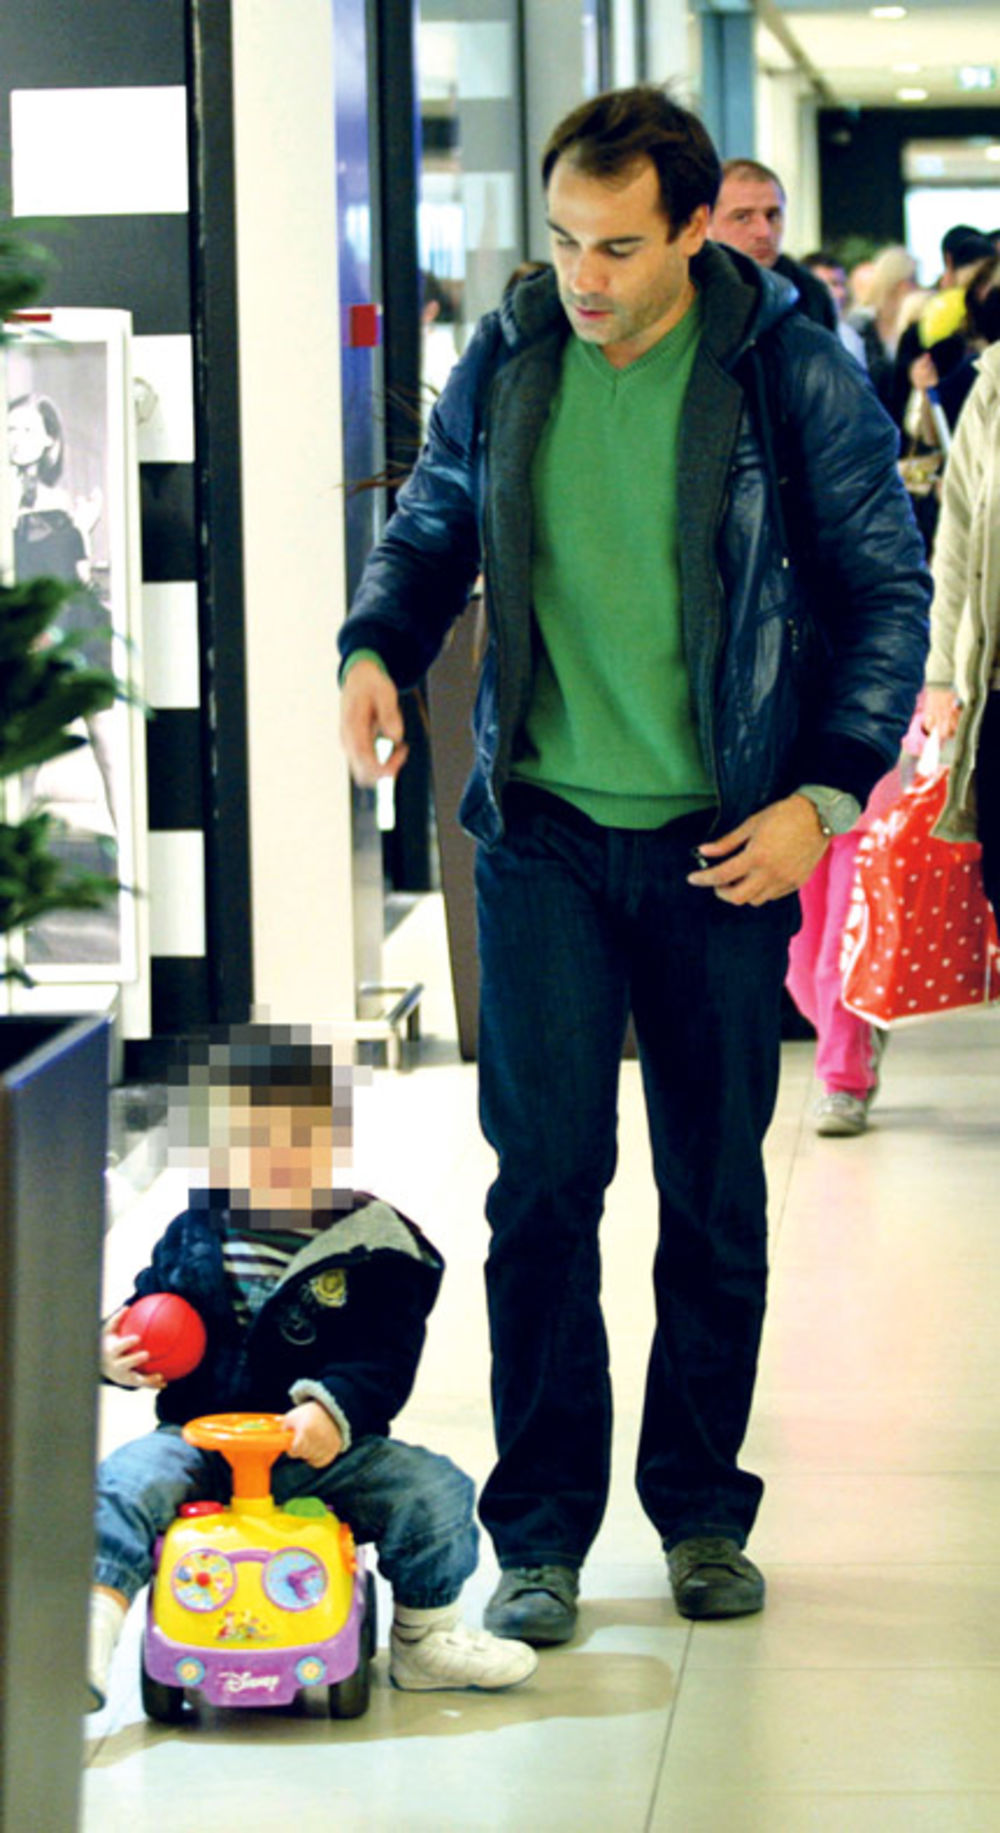 Niske temperature naterale su glumca Srđana Timarova (35) da nedavno zajedno sa svojim sinčićem Lazarom (3) potraži zabavu, ali i zaklon u unutrašnjosti tržnog centra.